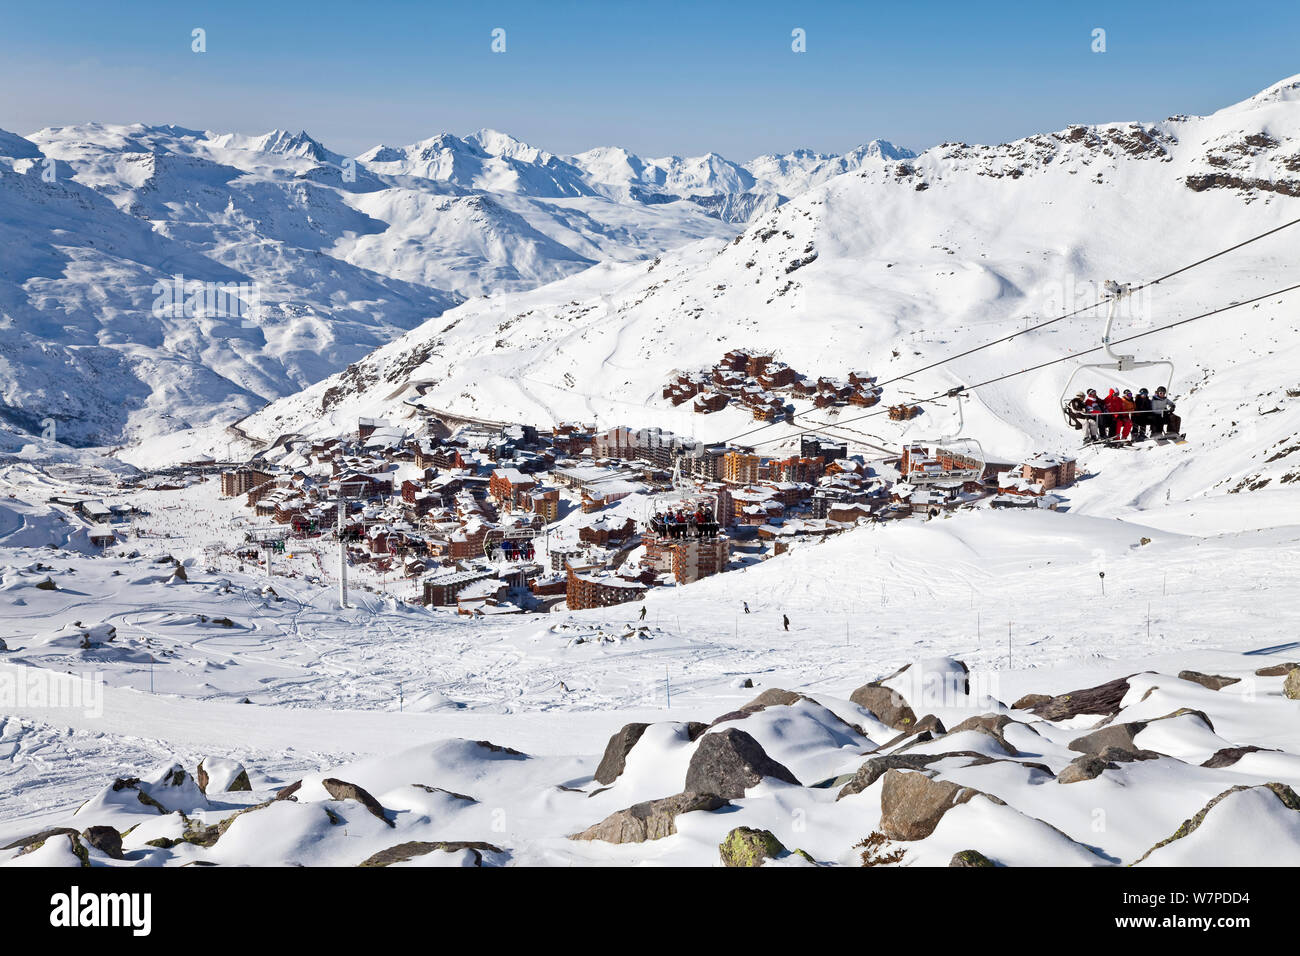 Station de ski de Val Thorens (2300m) dans les Trois Vallées, Les Trois Vallées, Savoie, Alpes, France 2009 Banque D'Images